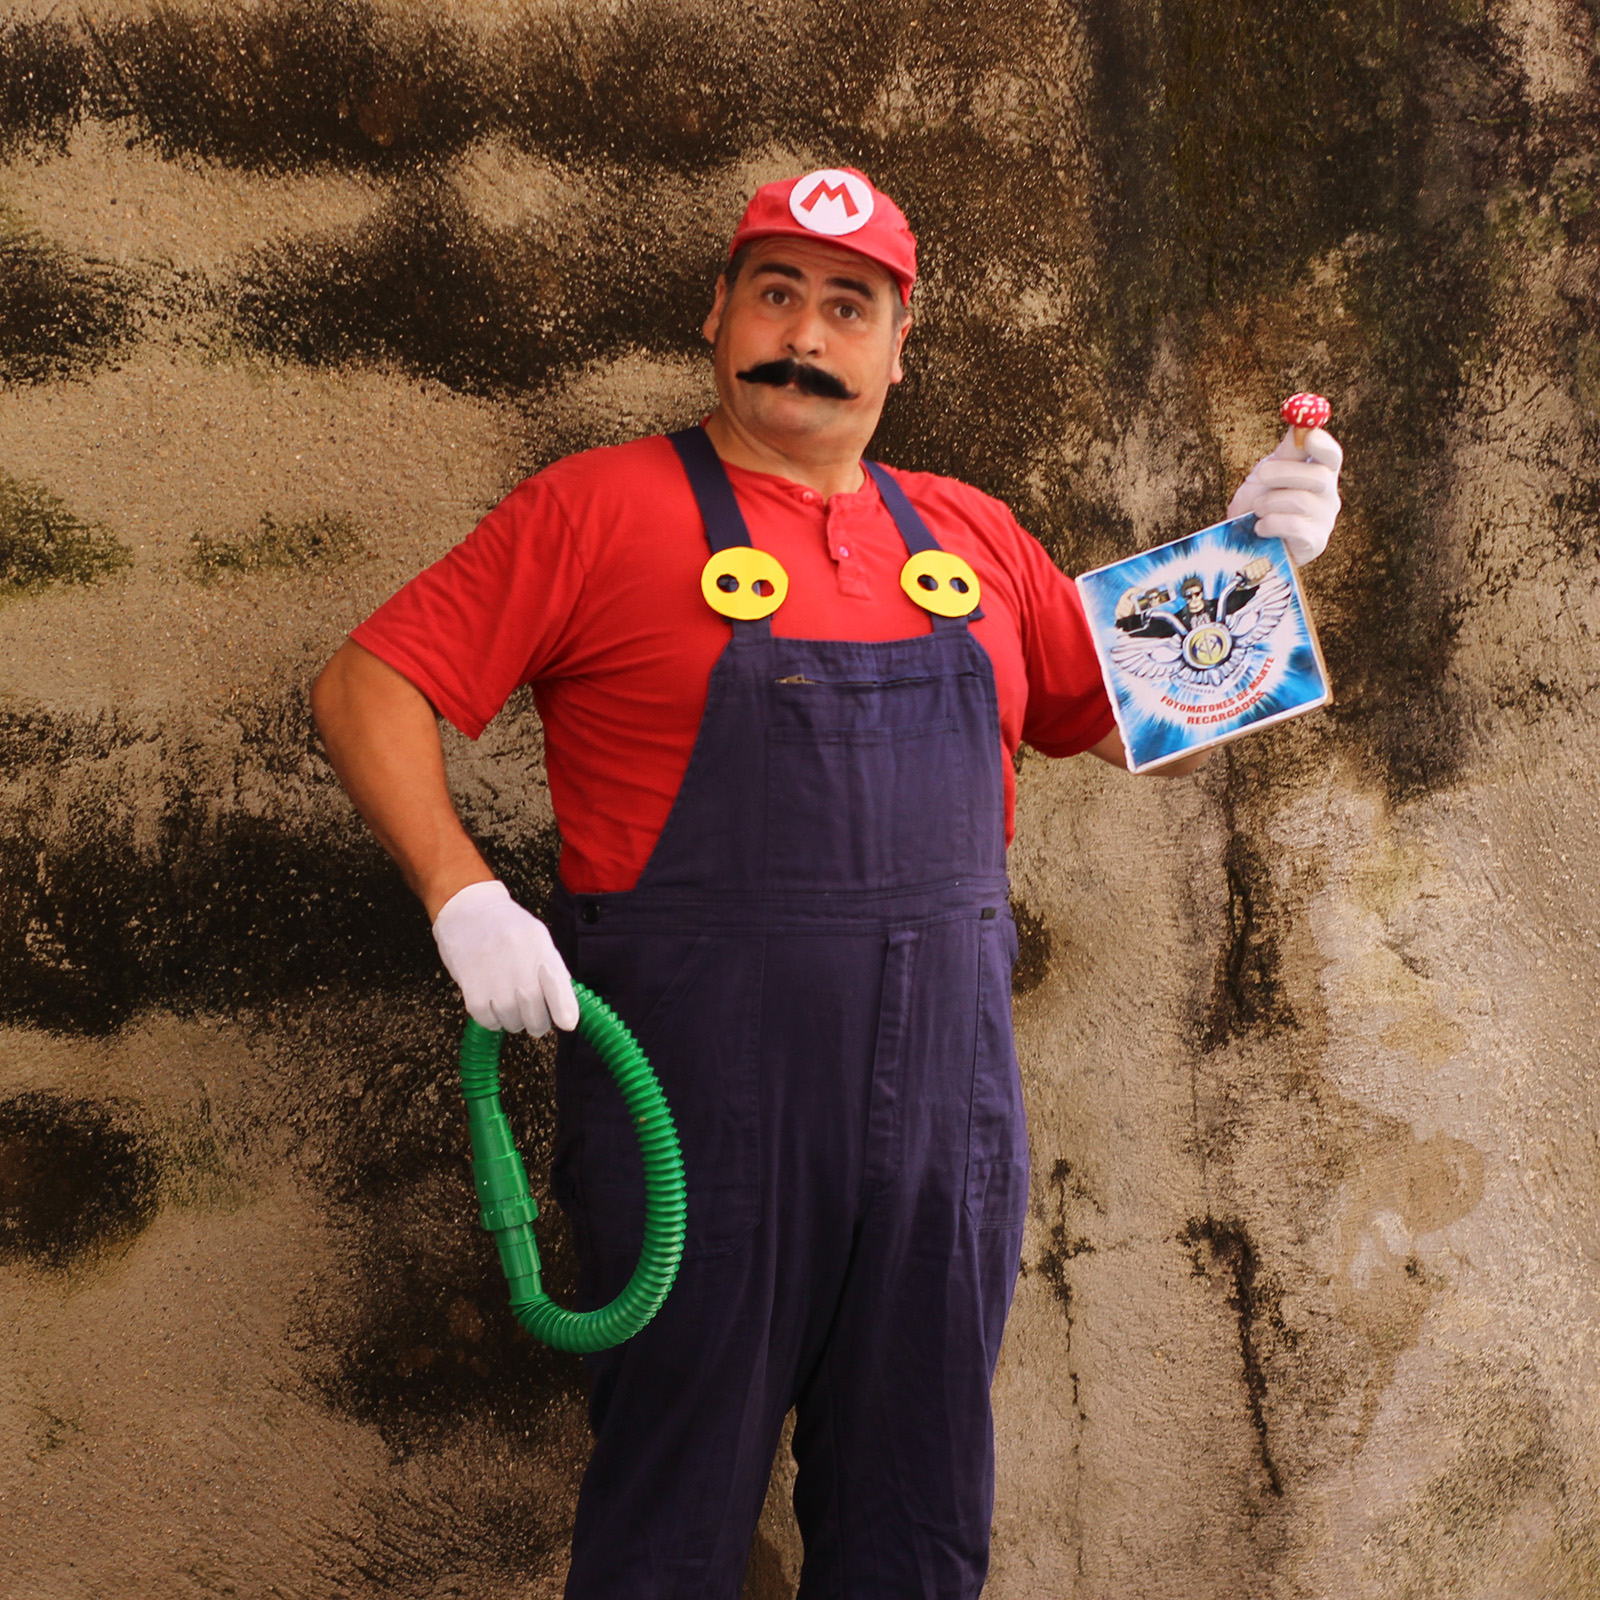 84. Caracterizado como Super Mario, con una seta en una mano y una tubería verde en la otra